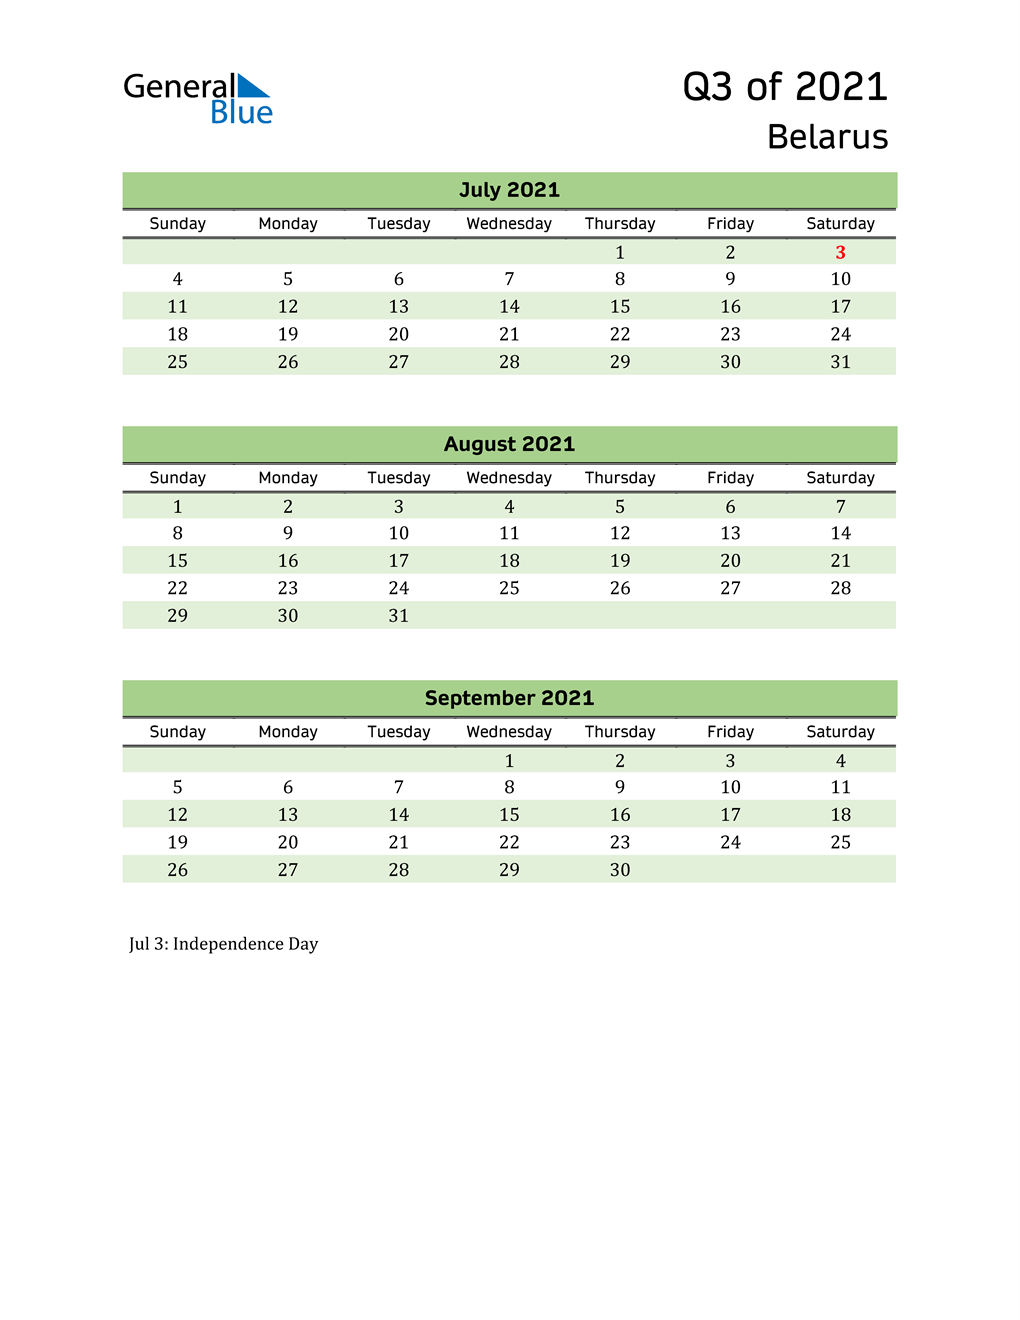  Quarterly Calendar 2021 with Belarus Holidays 